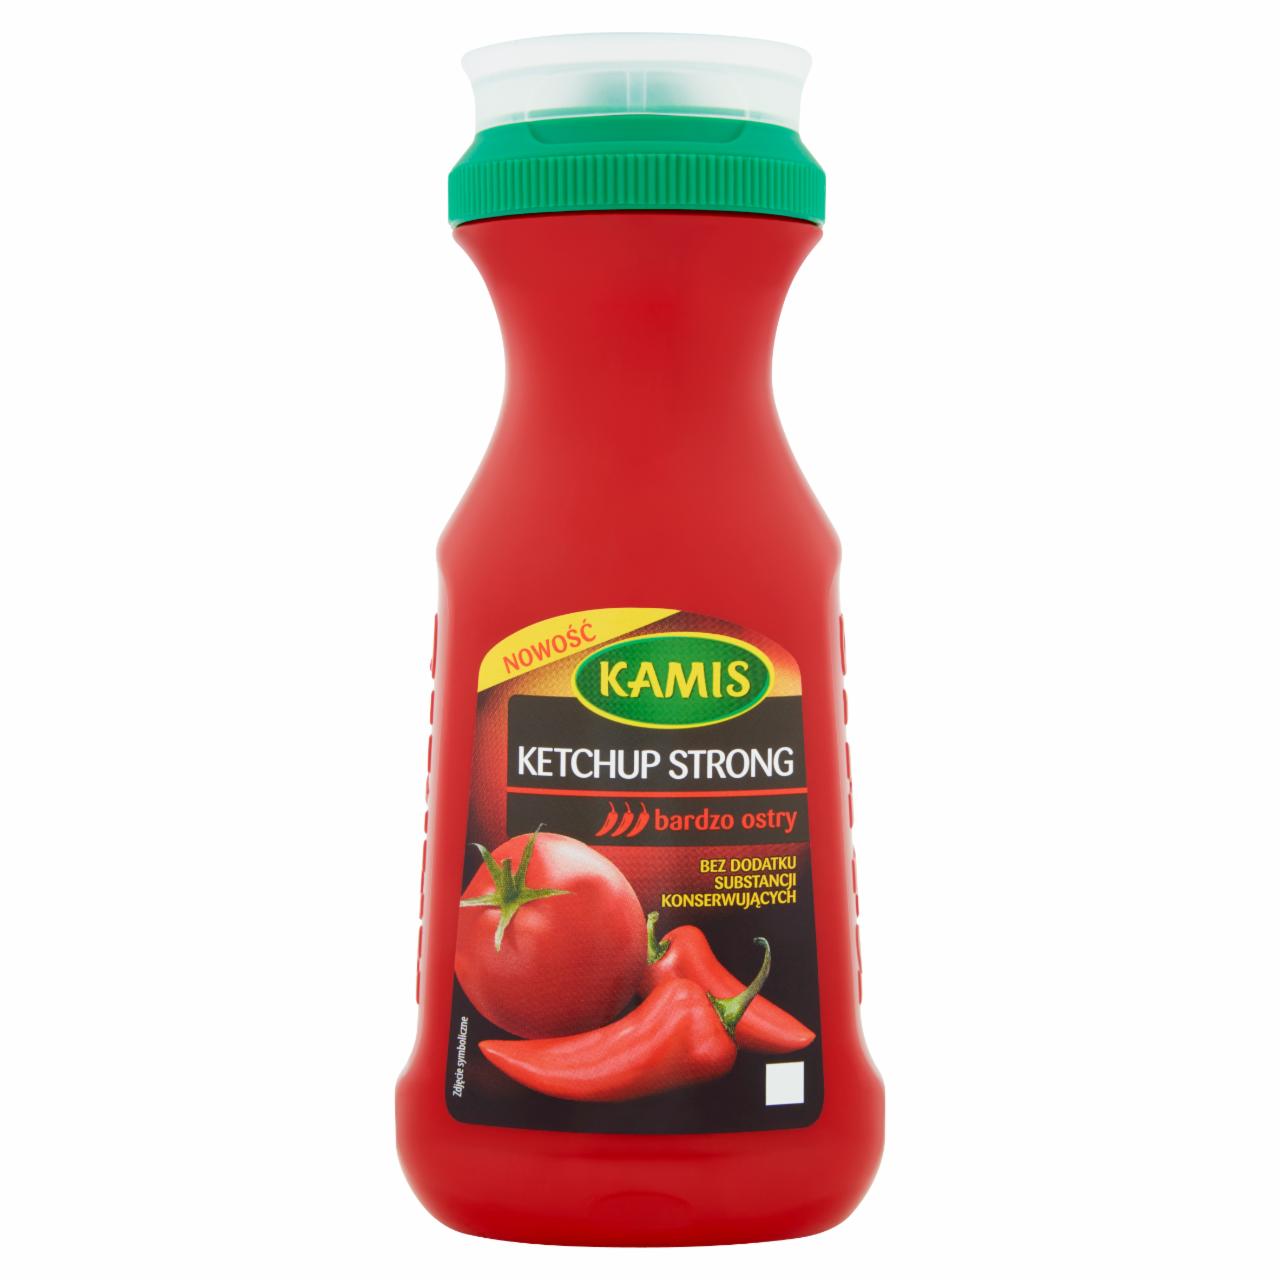 Zdjęcia - Kamis Ketchup Strong 350 g